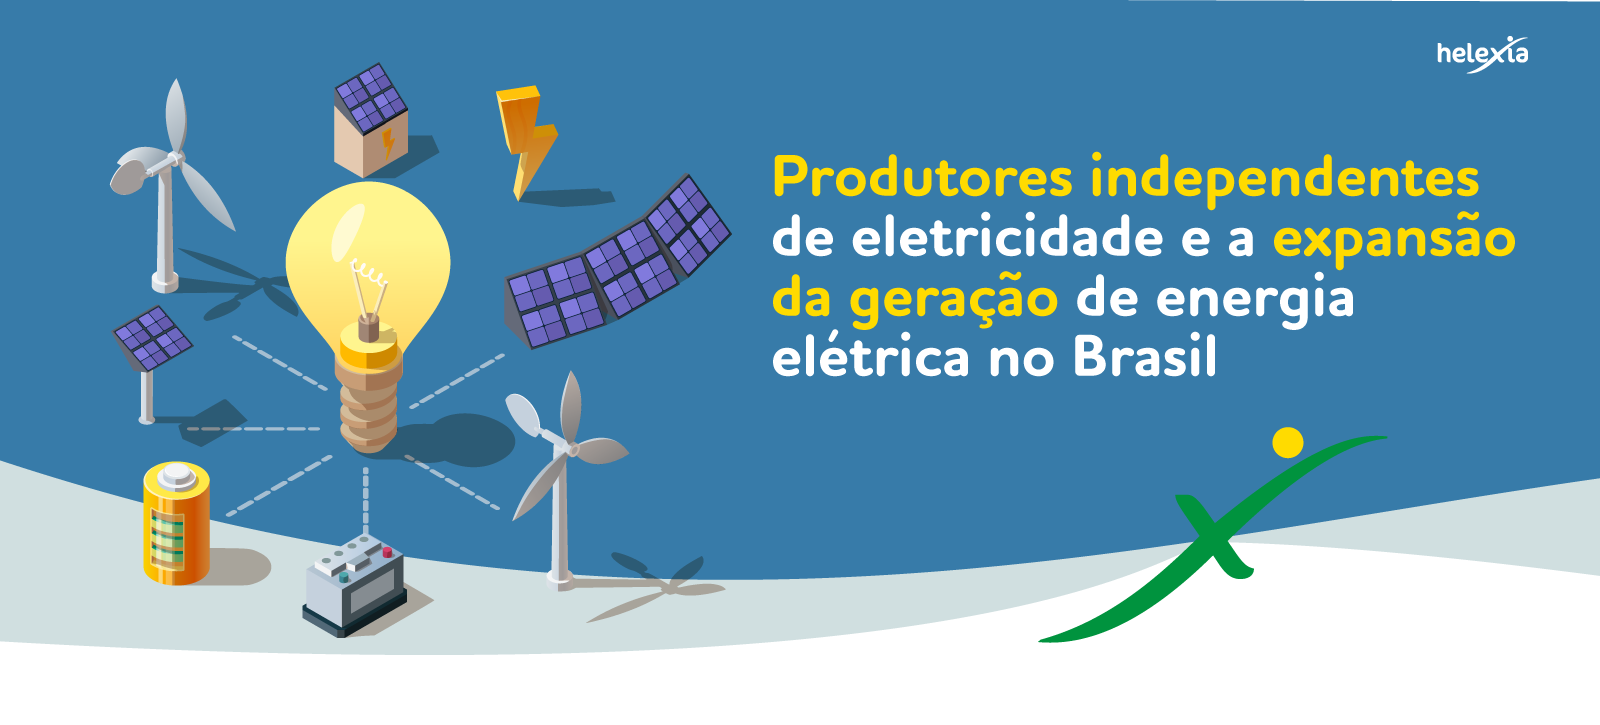 PRODUTORES INDEPENDENTES DE ELETRICIDADE E A EXPANSÃO DA GERAÇÃO DE ENERGIA ELÉTRICA NO BRASIL.